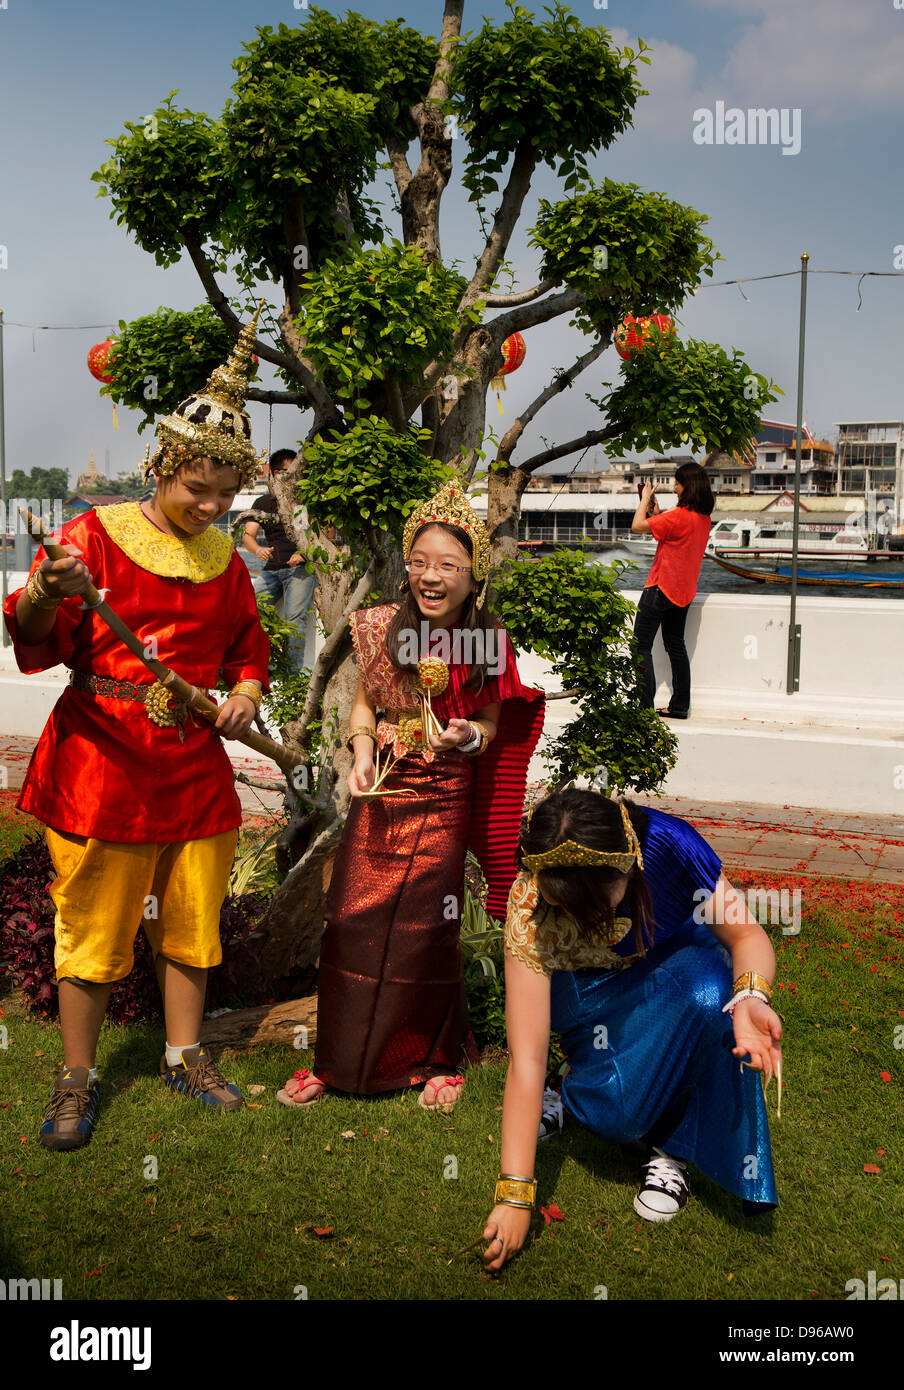 Les touristes d'être habillés en costumes traditionnels thaïlandais et posant pour des photos dans le parc de Wat Arun, un temple bouddhiste Banque D'Images